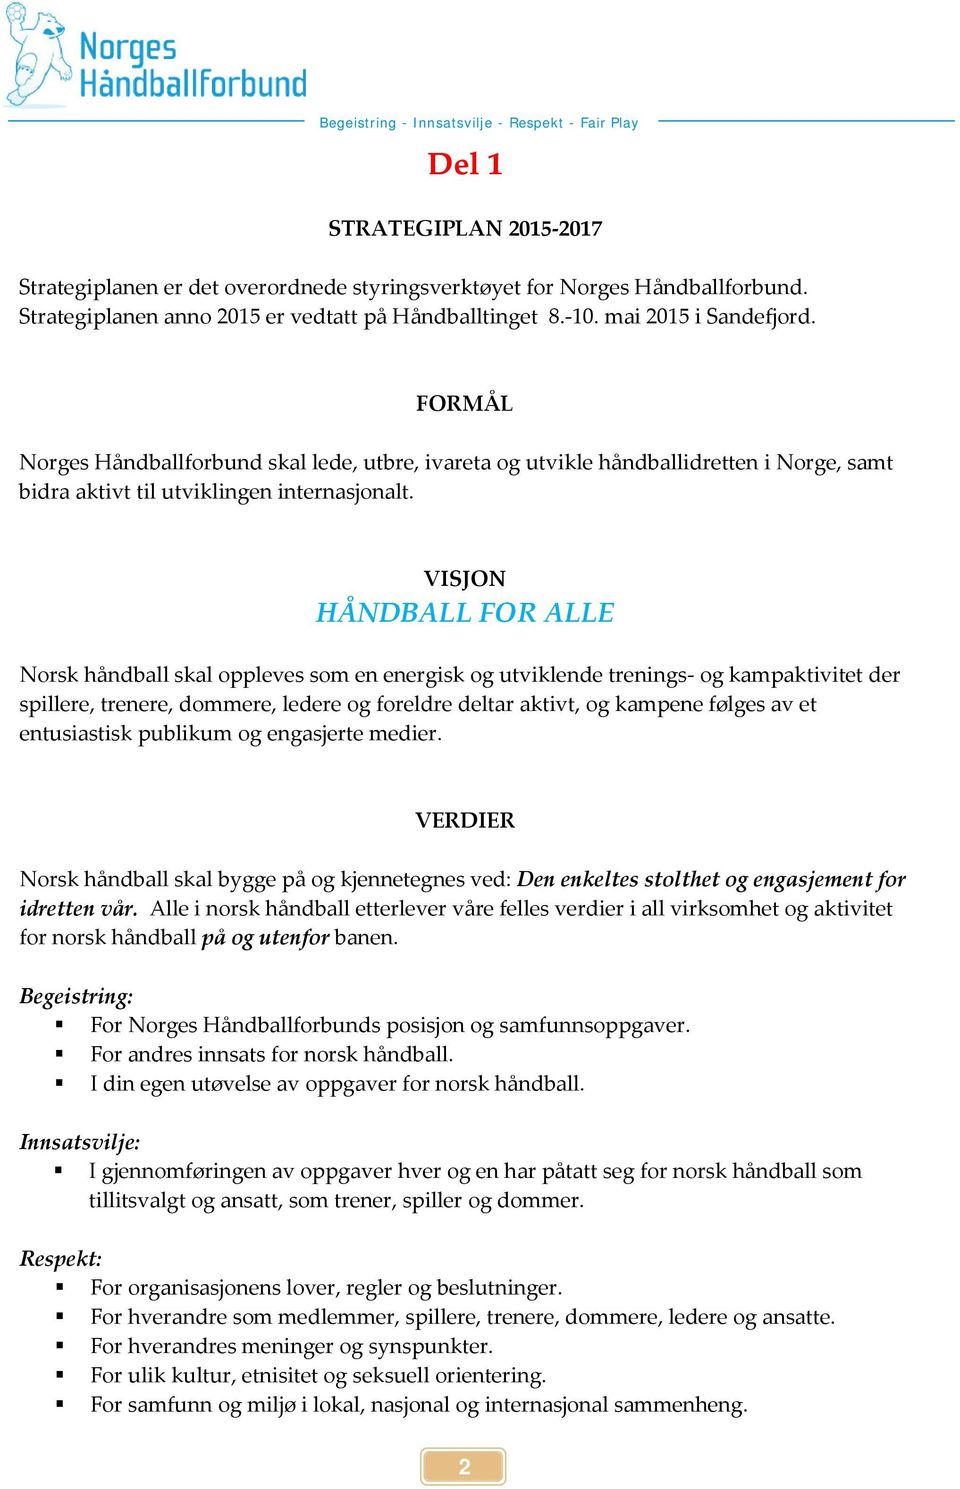 VISJON HÅNDBALL FOR ALLE Norsk håndball skal oppleves som en energisk og utviklende trenings- og kampaktivitet der spillere, trenere, dommere, ledere og foreldre deltar aktivt, og kampene følges av